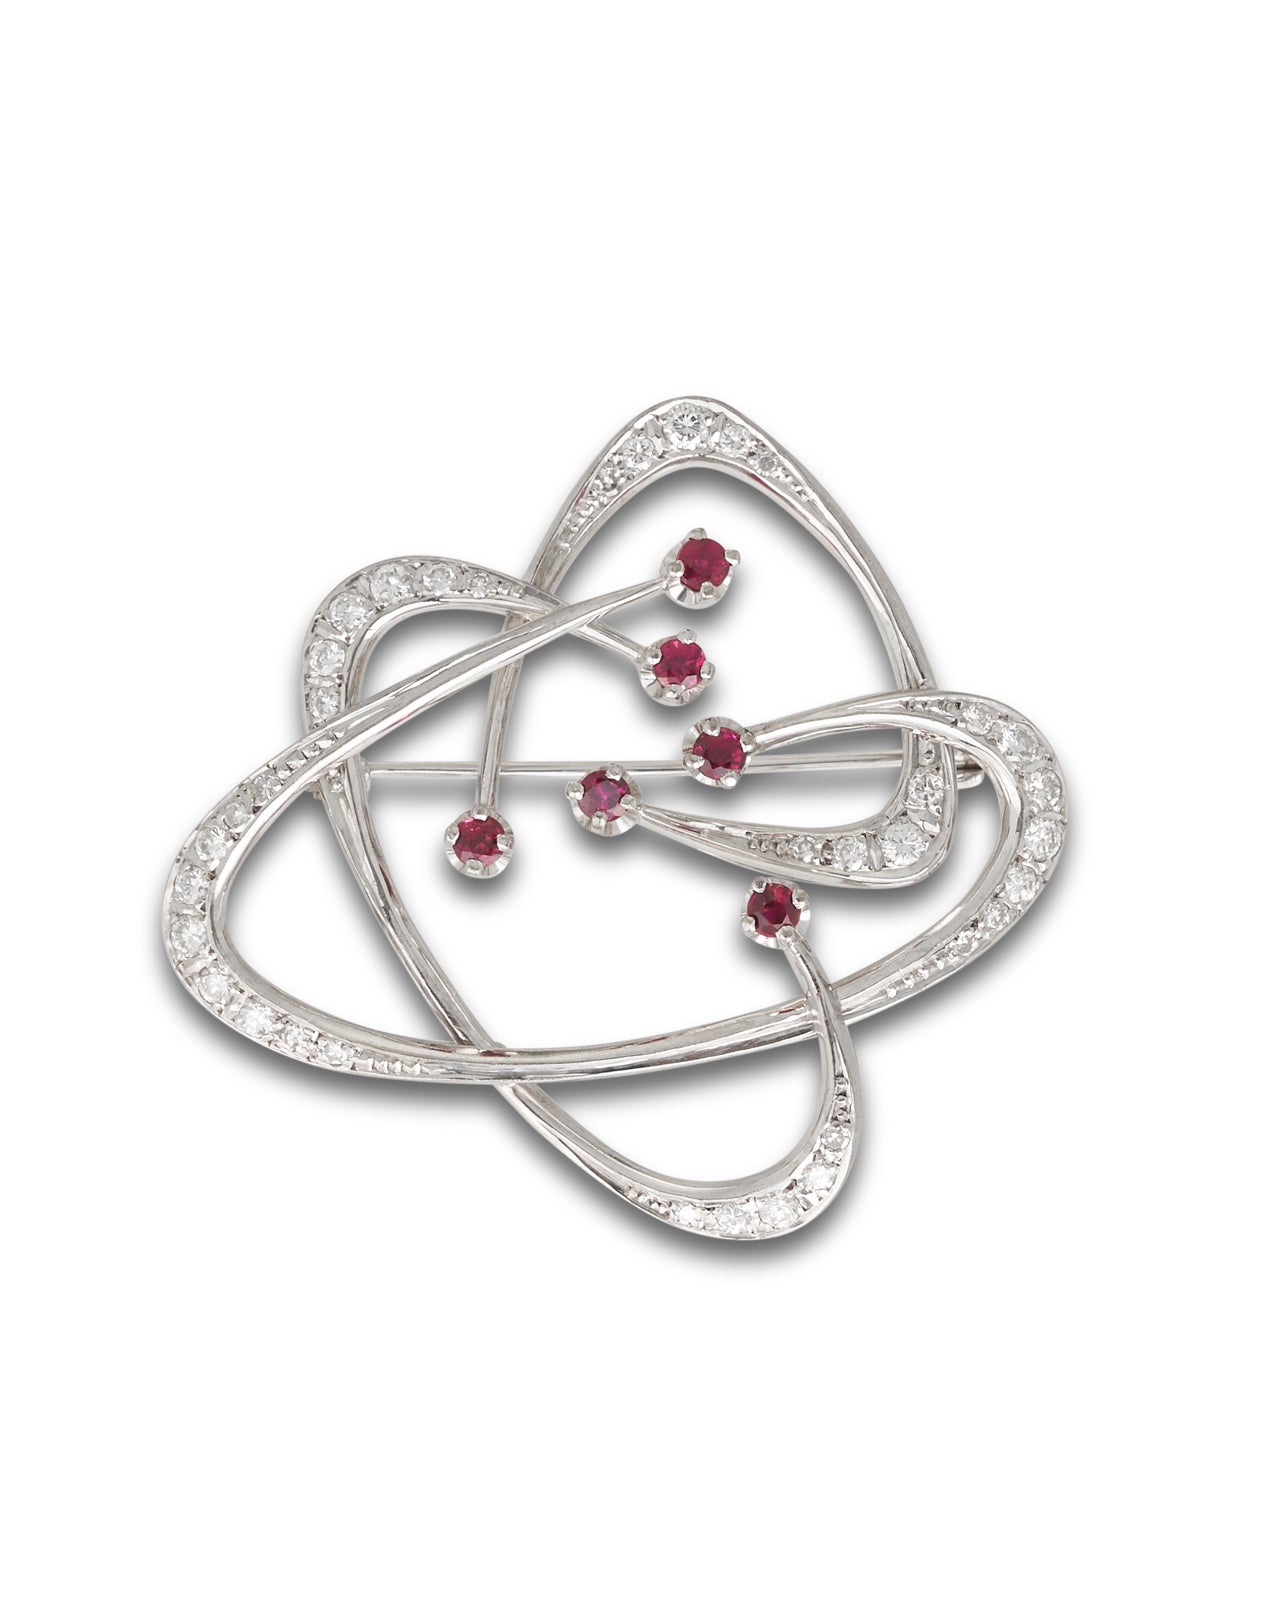 Vintage ruby and diamond 'Atom' brooch